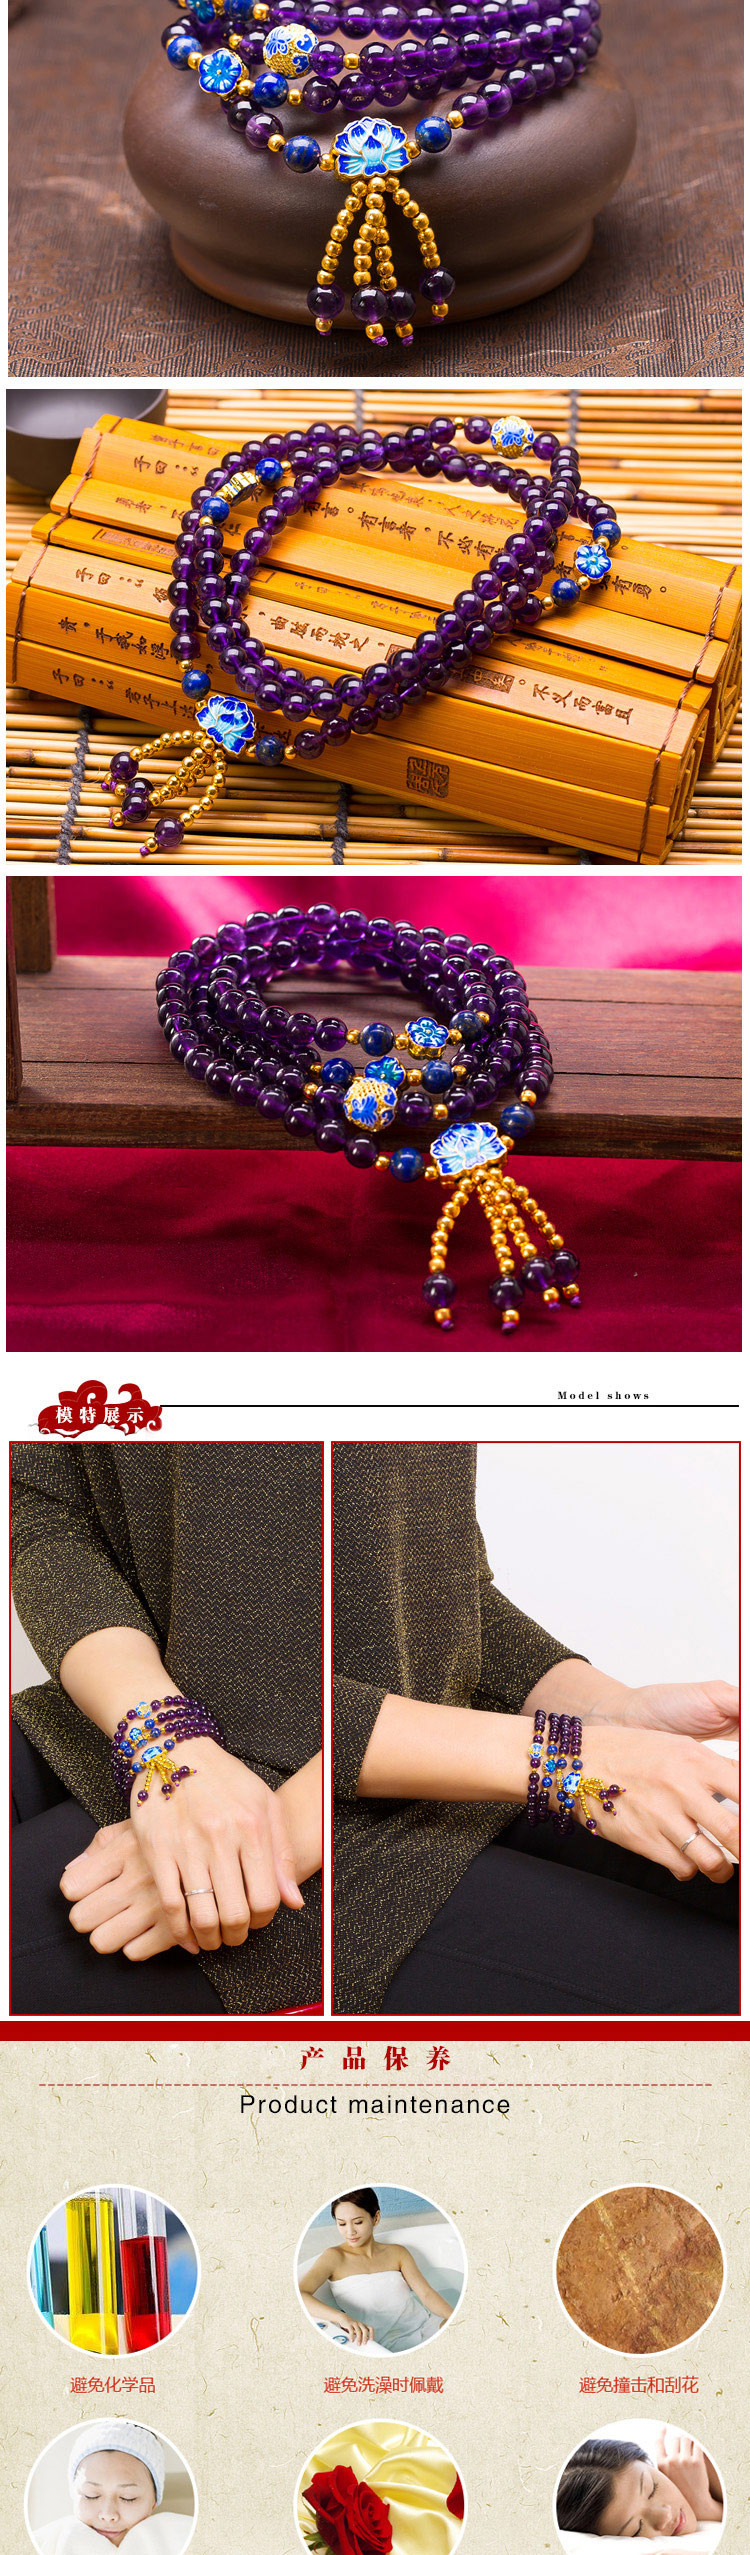 芭法娜 紫梦妖蓝 天然紫水晶6MM多圈时尚手链 附证书